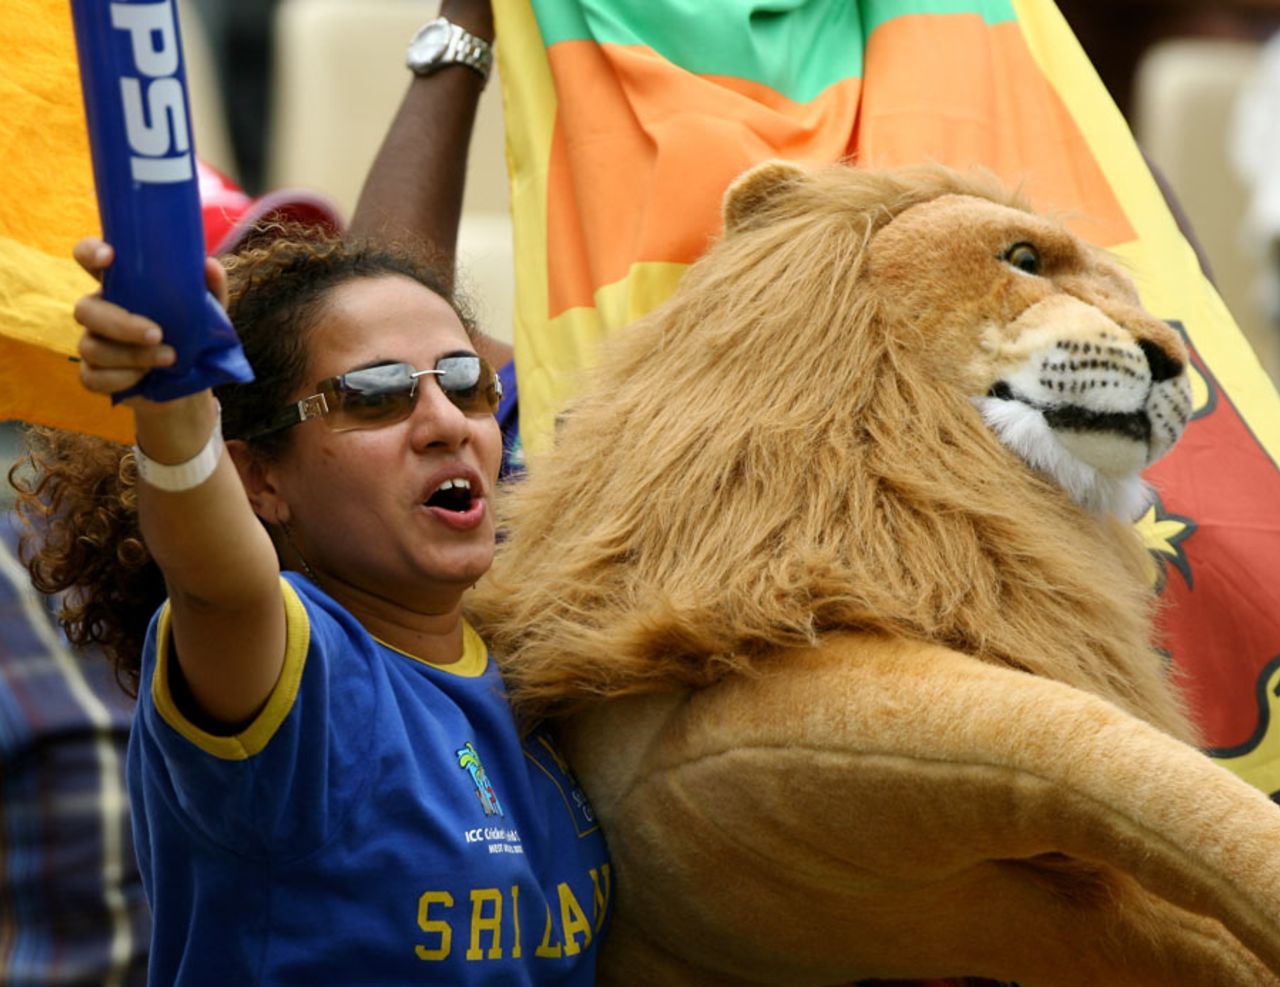 A Sri Lankan fan